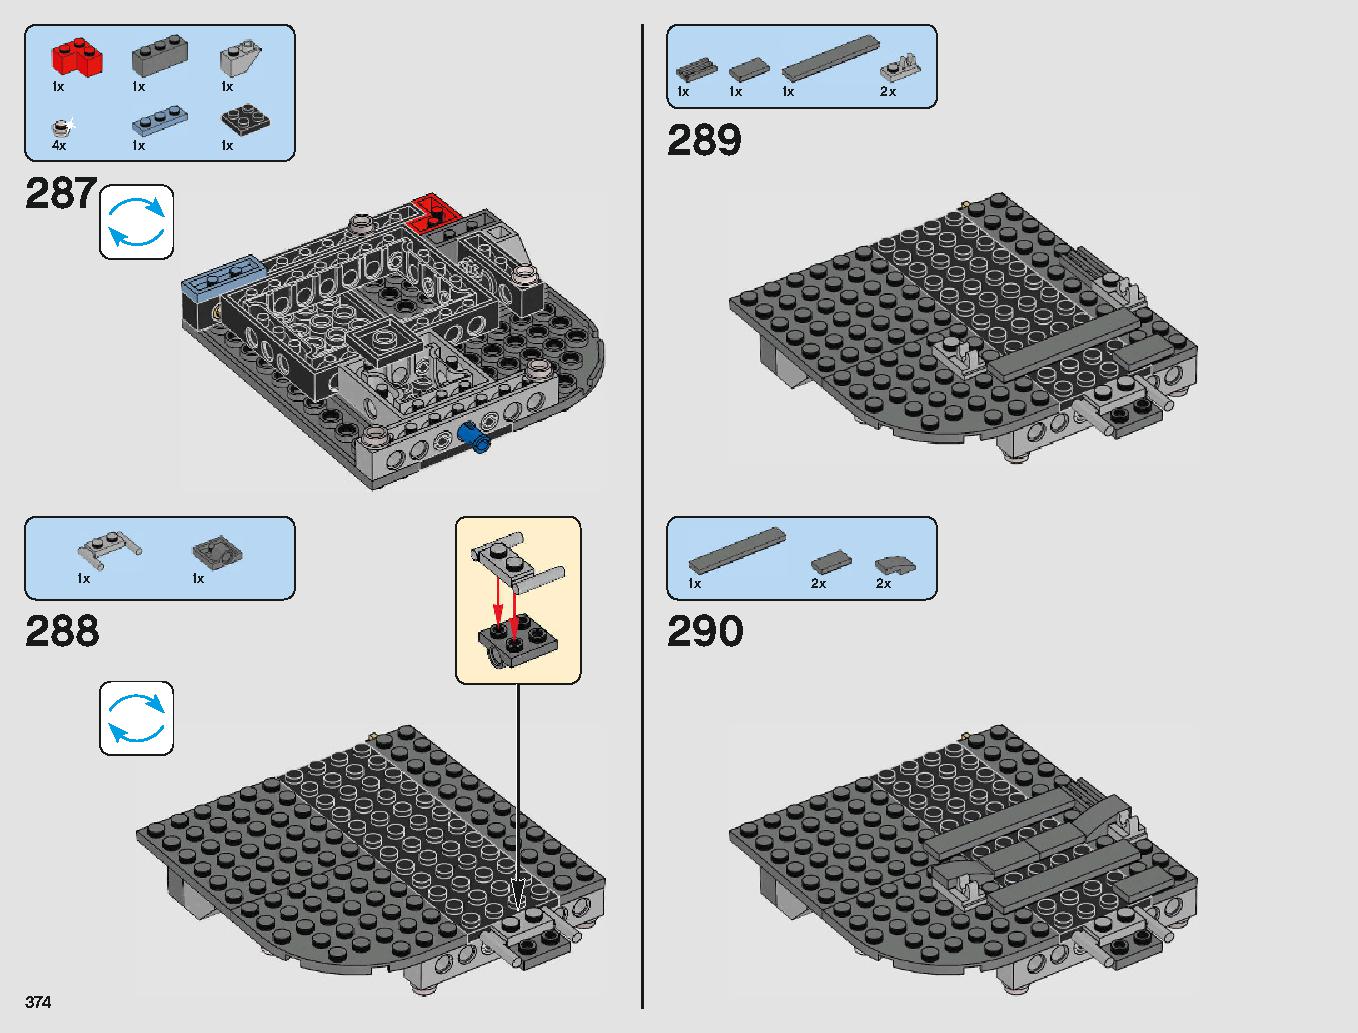 クラウド・シティ 75222 レゴの商品情報 レゴの説明書・組立方法 374 page